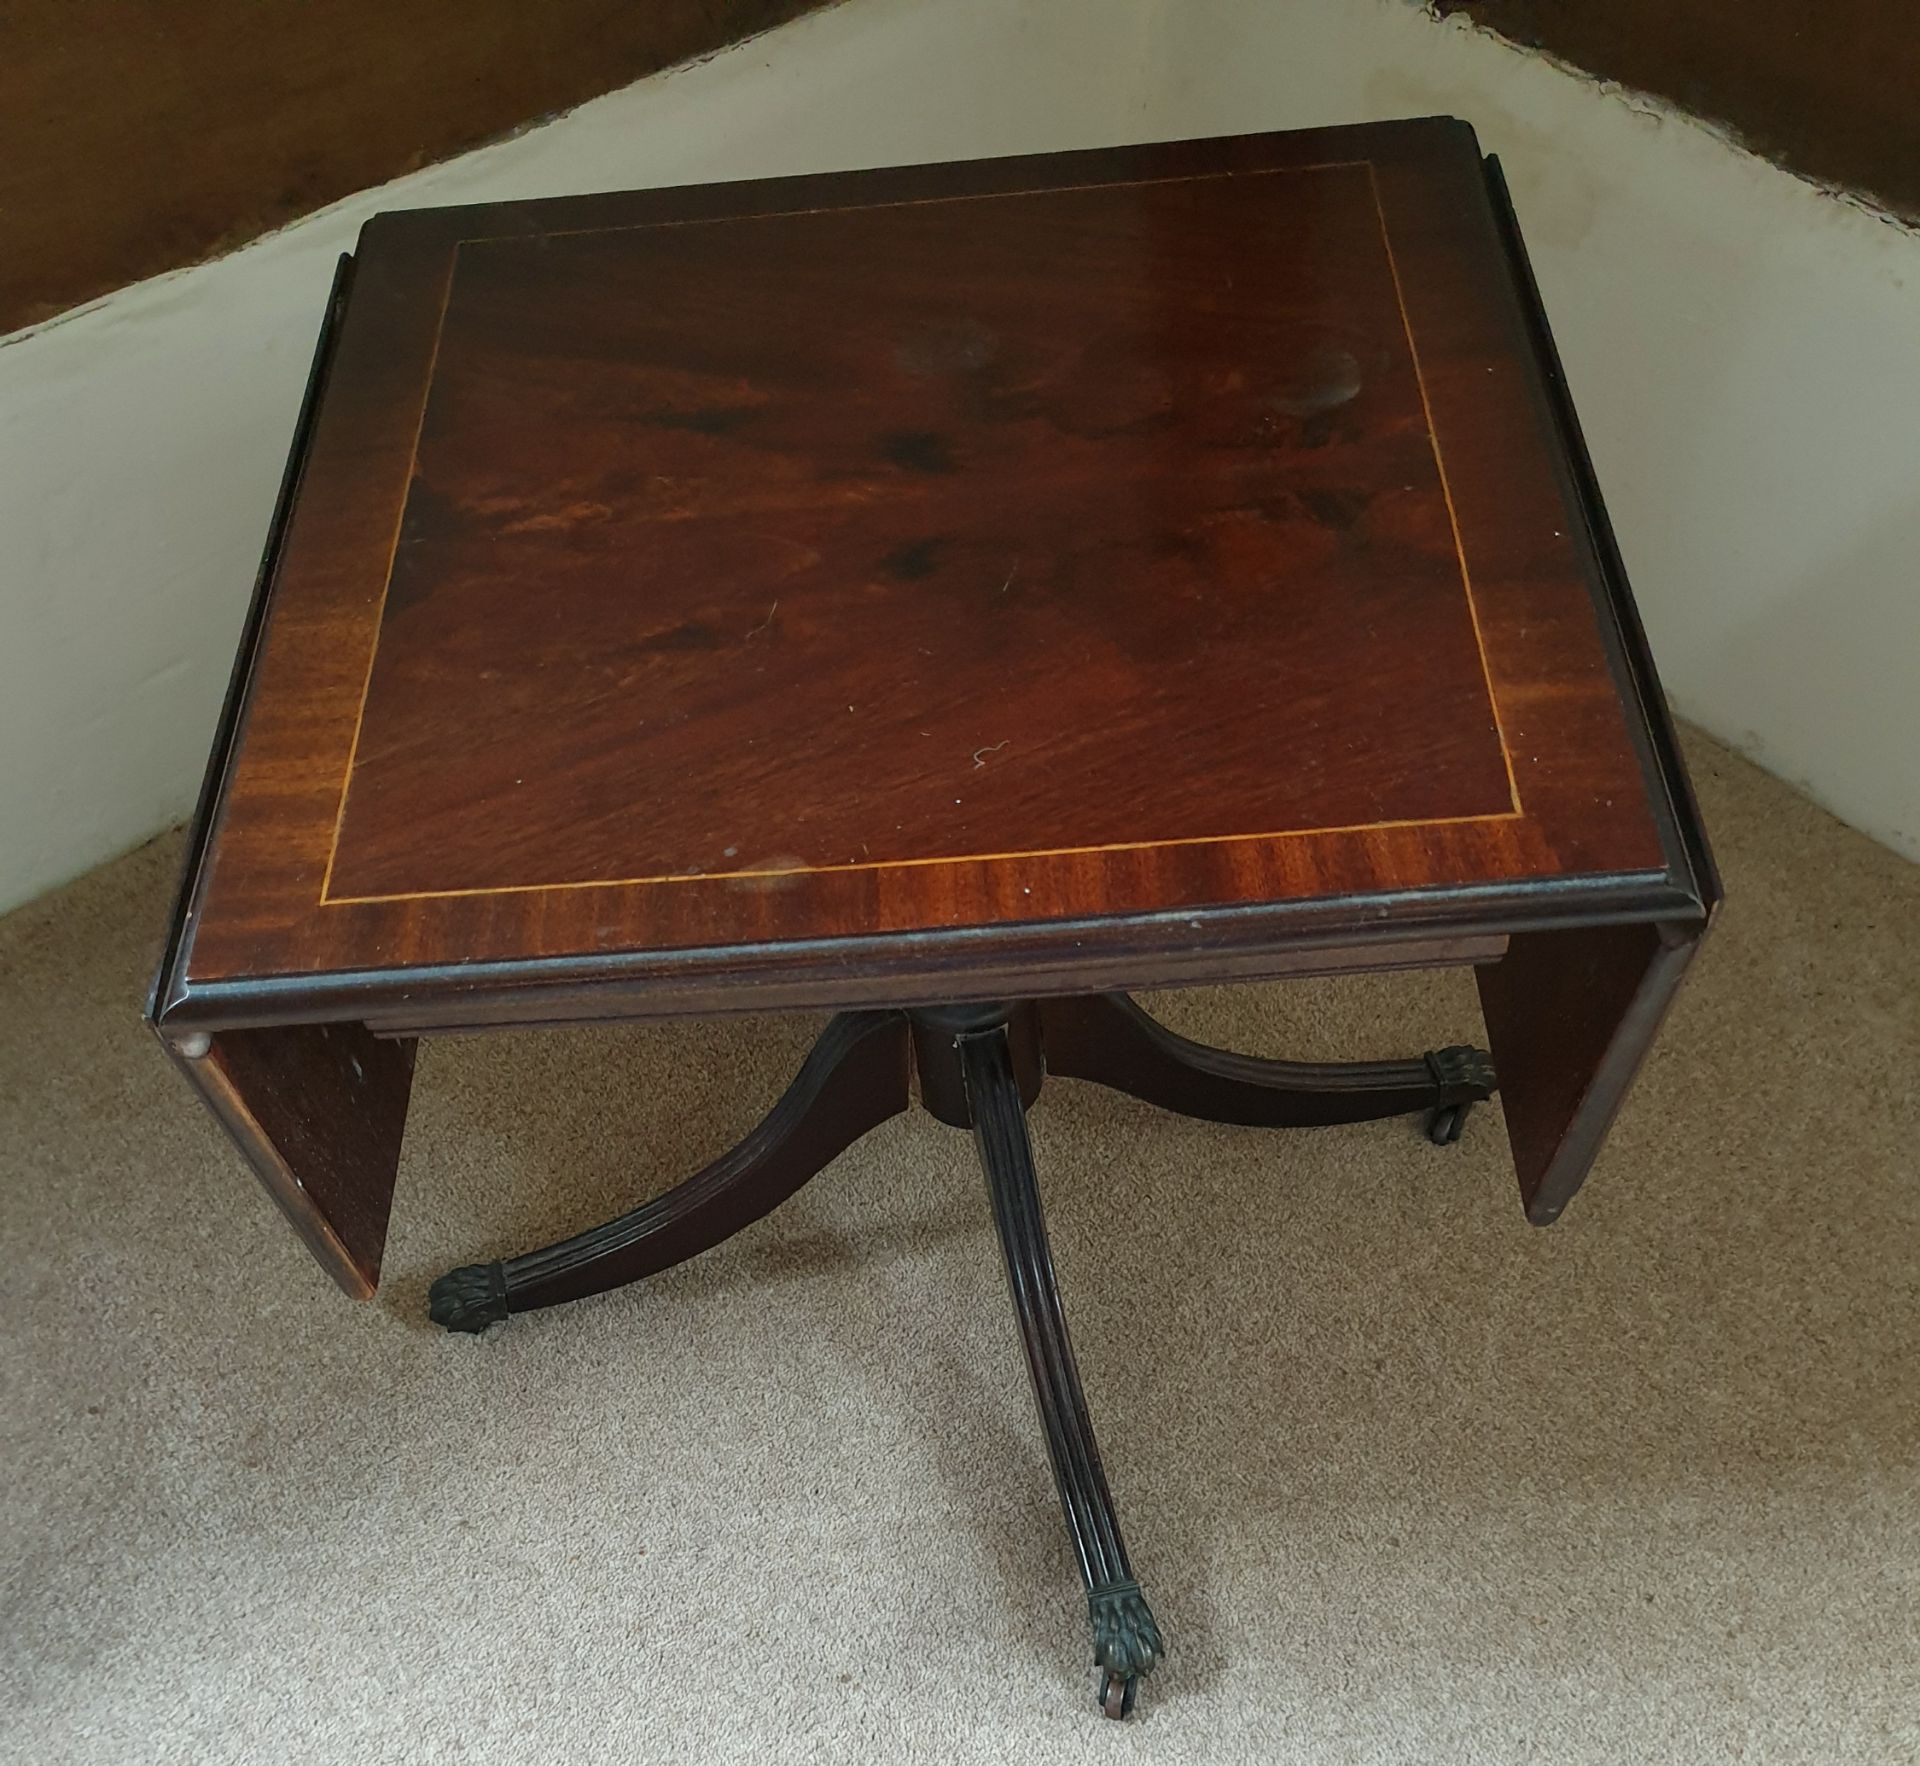 Antique Furniture 2 Leaf Side Table - Image 2 of 3